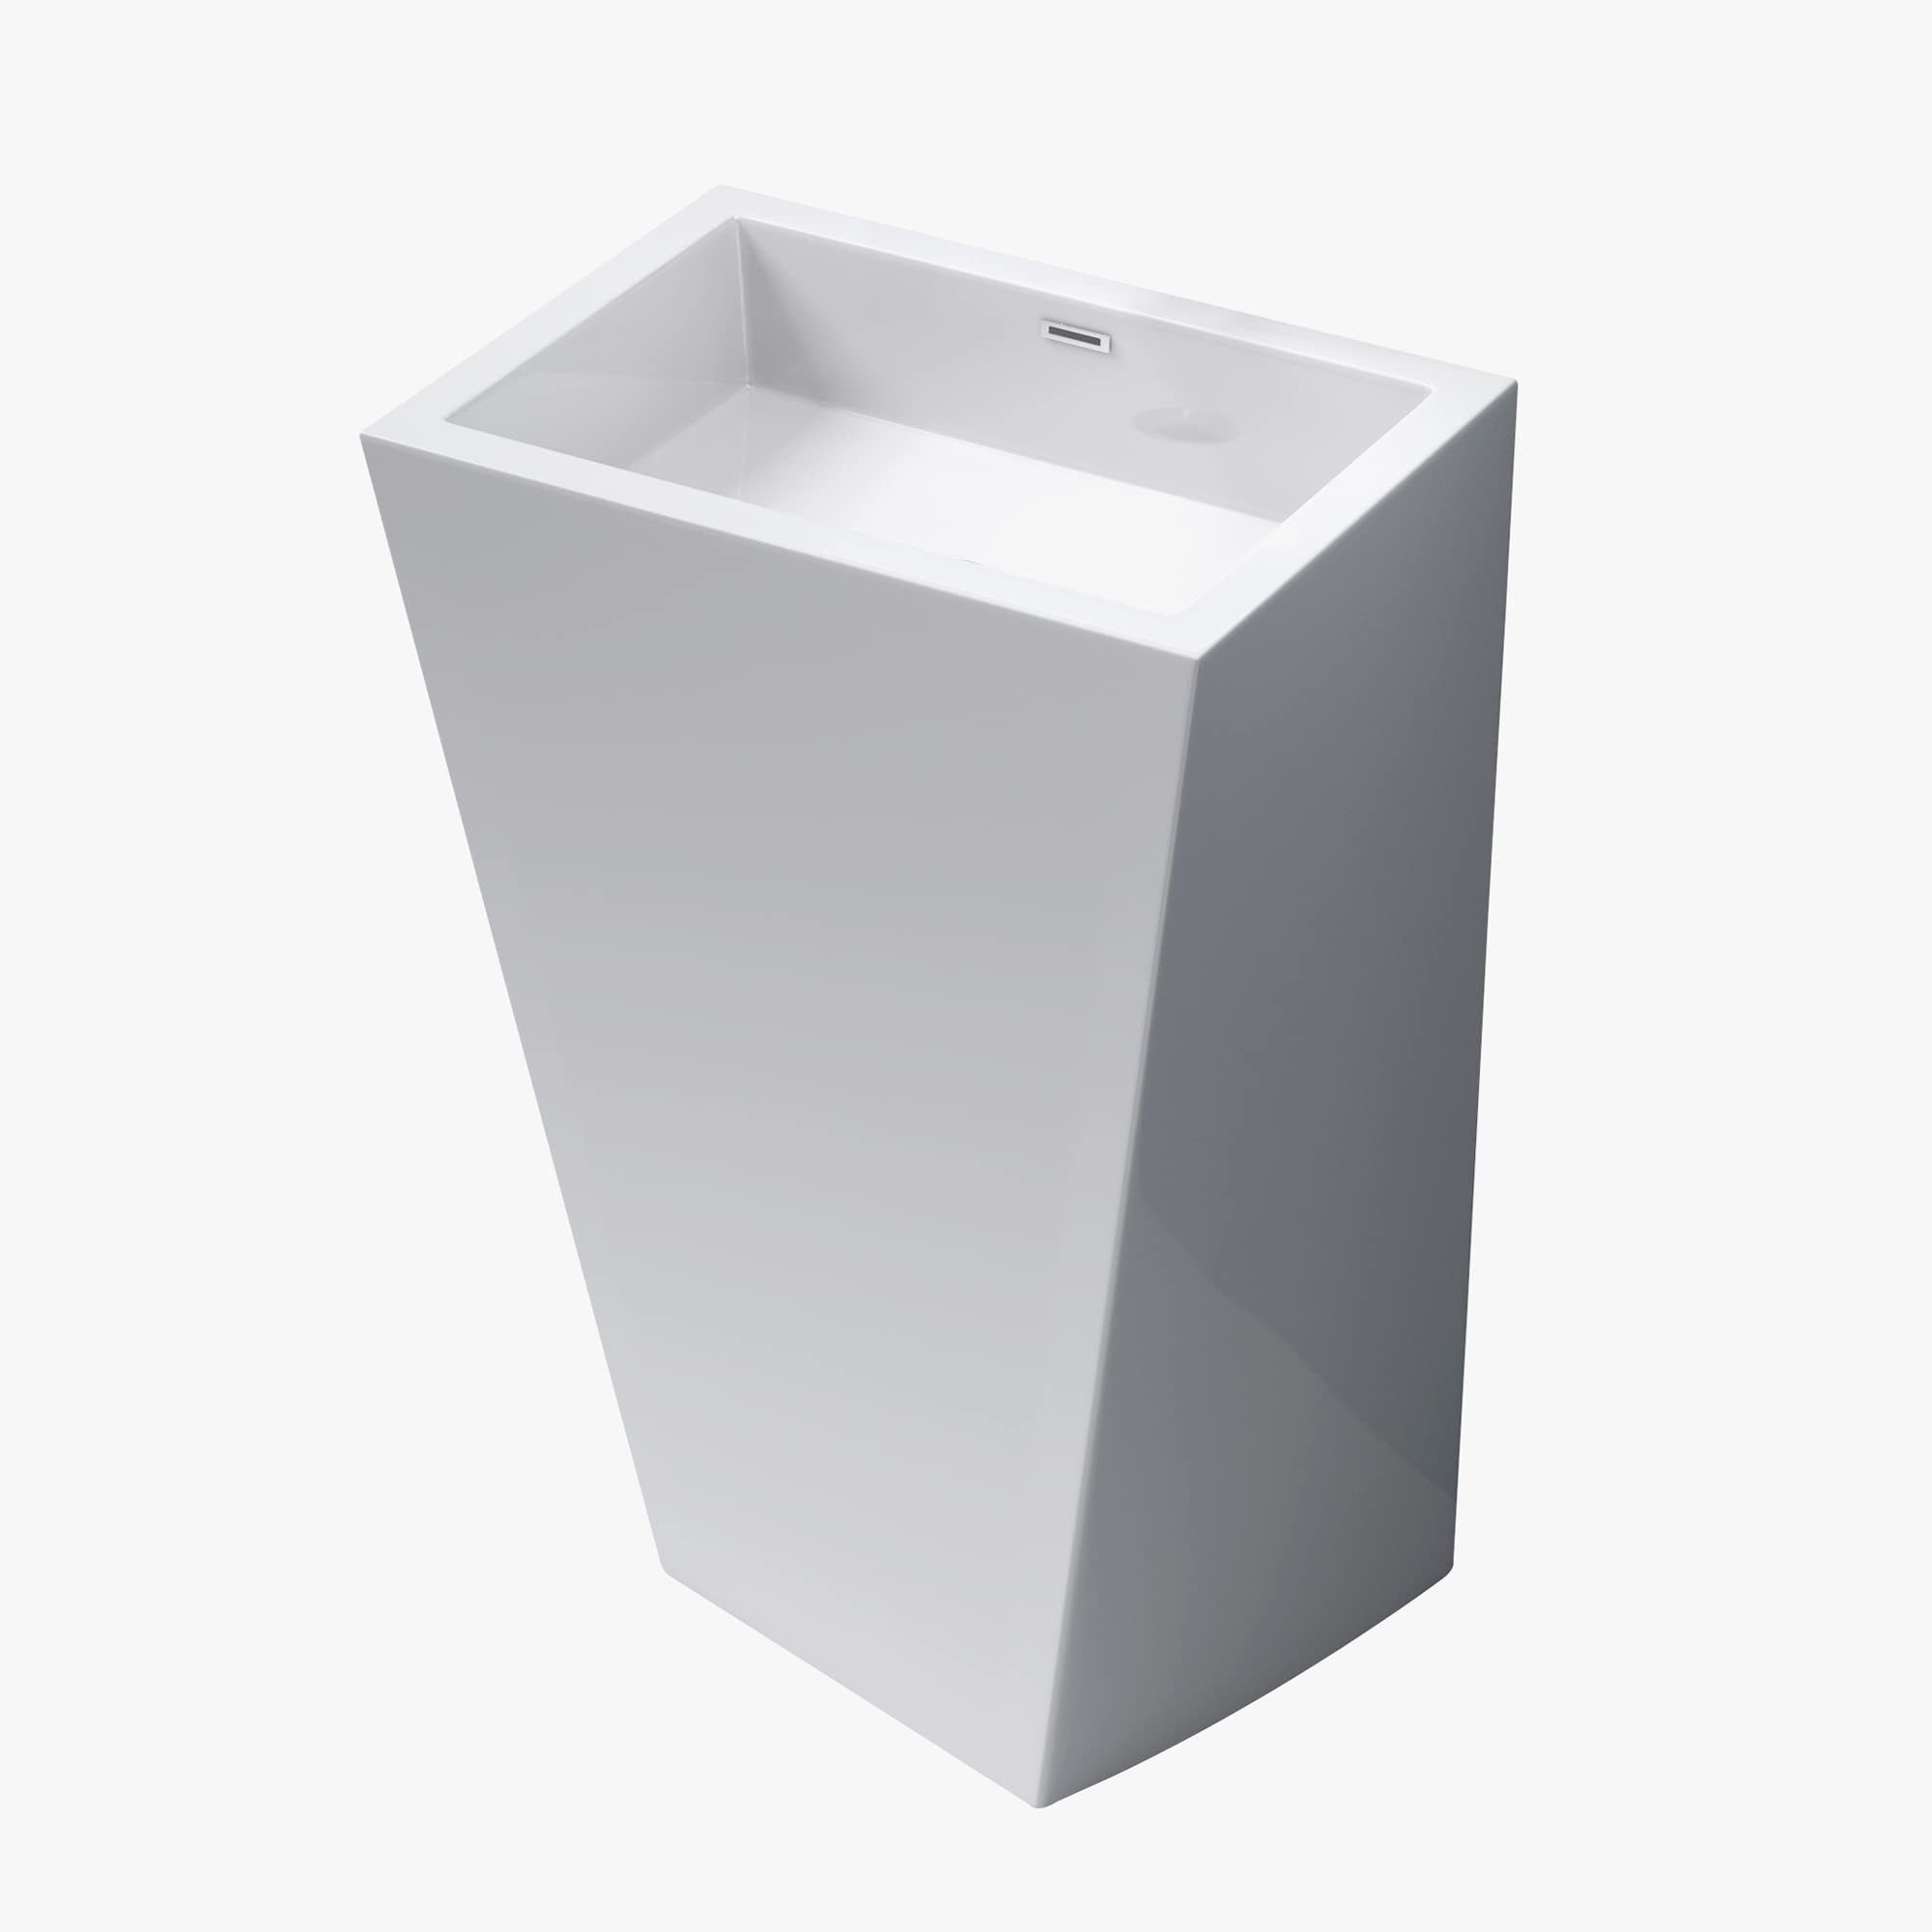 Mai & Mai Aufsatzwaschbecken Design Standwaschbecken freistehend Col38 weiß, aus Mineralguss